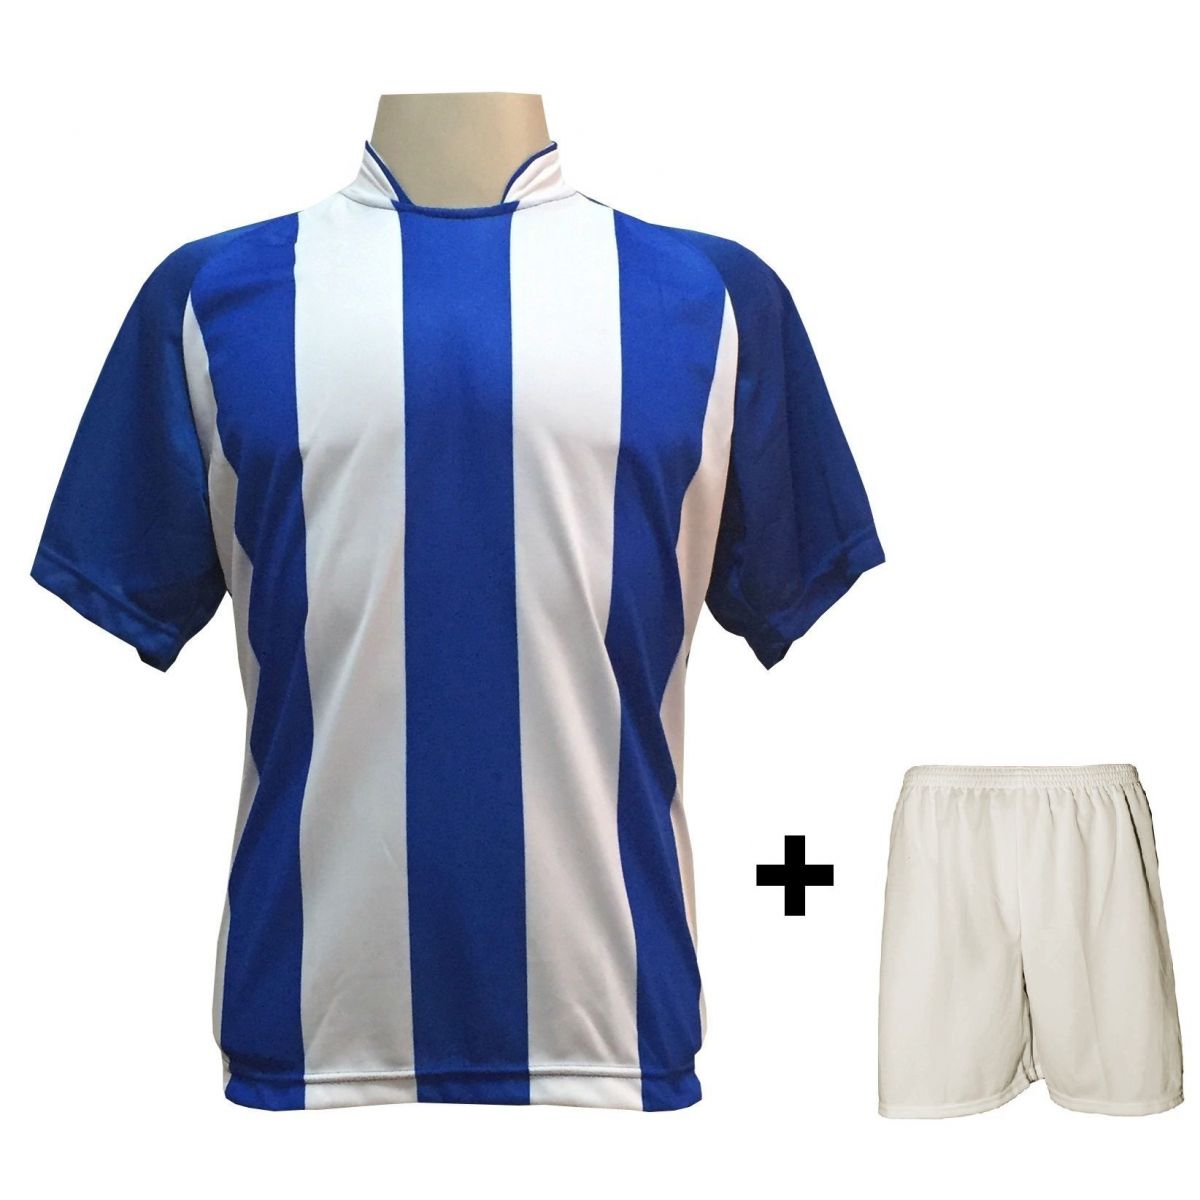 Uniforme Esportivo com 12 camisas modelo Milan Royal/Branco + 12 calções modelo Madrid + 1 Goleiro + Brindes